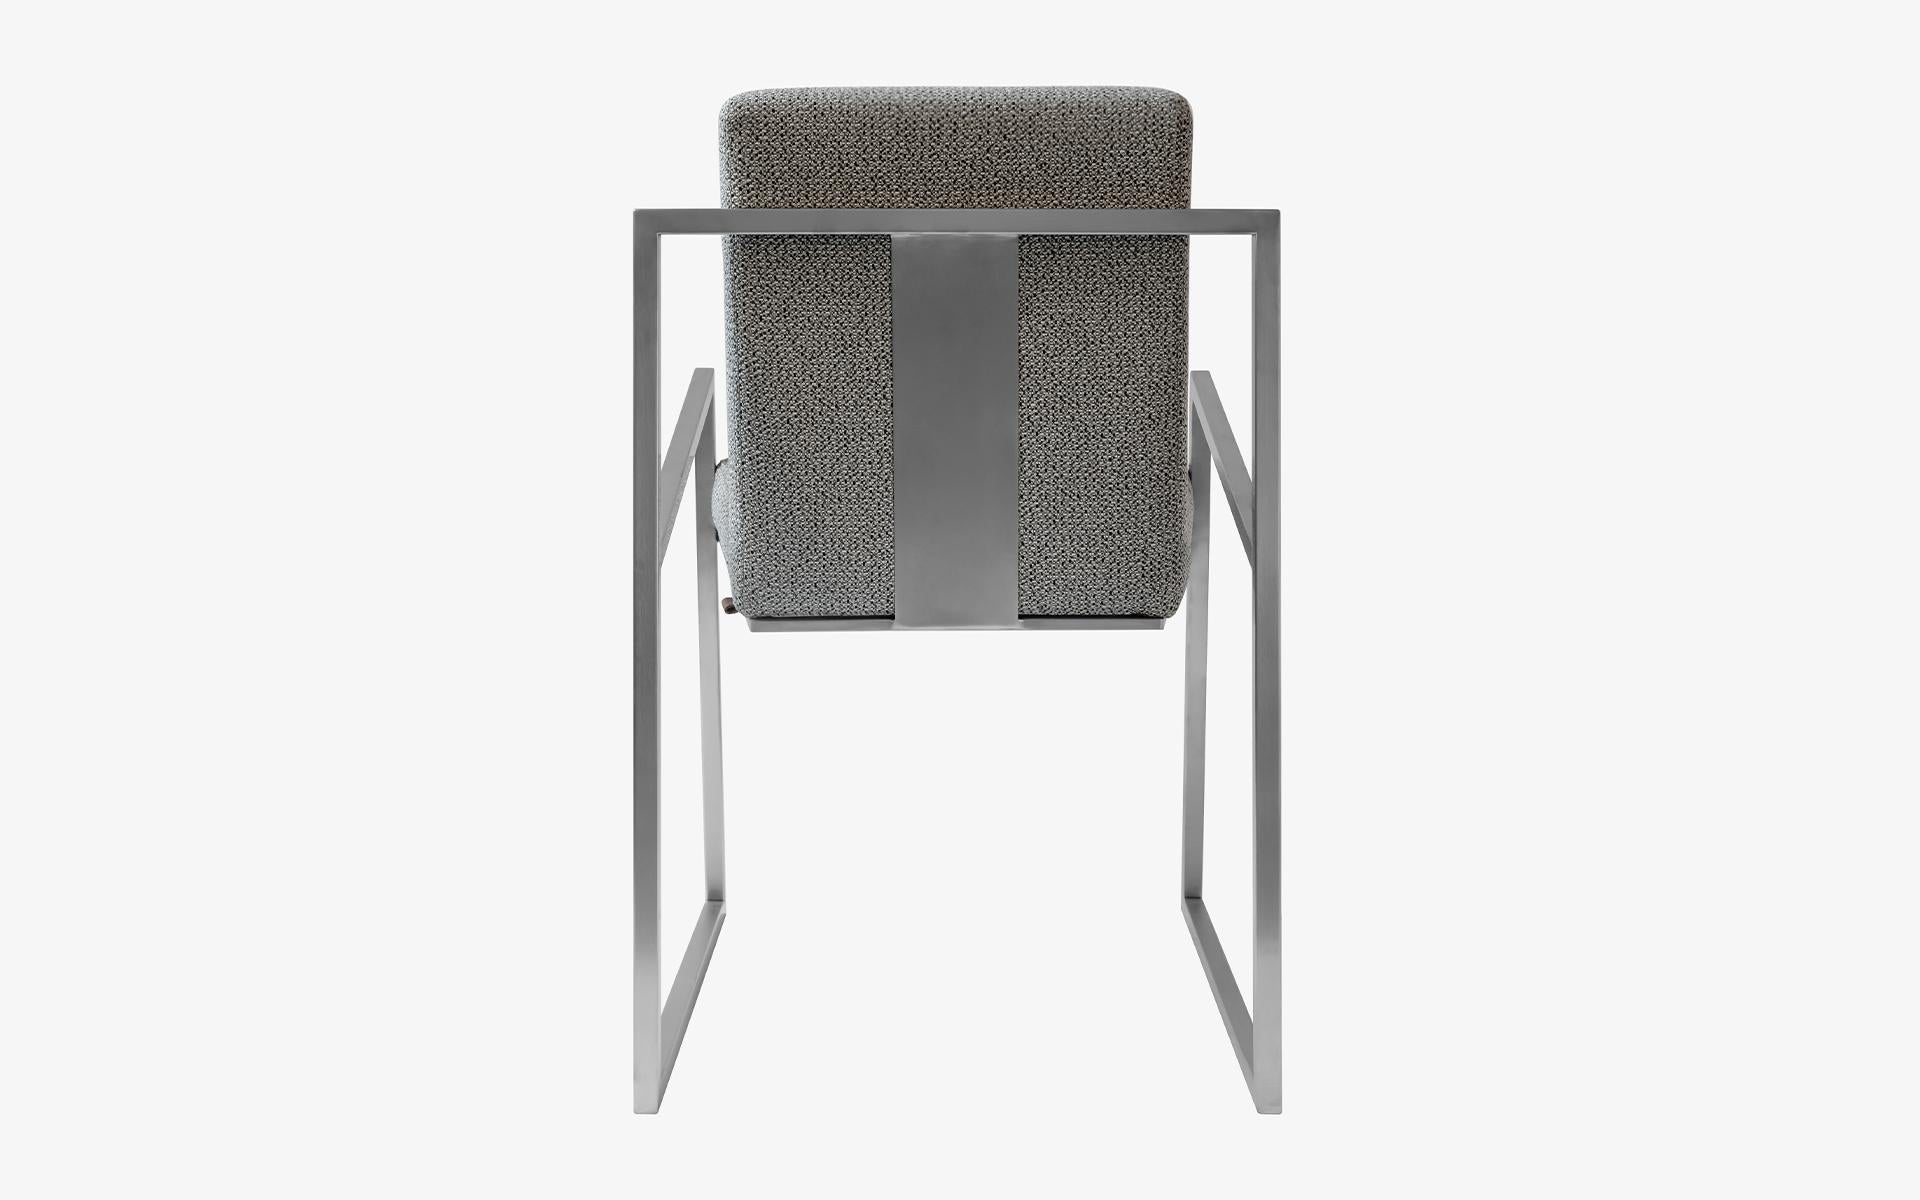 La fameuse chaise chromée mate offre un siège confortable et un design luxueux à votre salon... Il constituera également une option simple et élégante pour votre salle à manger.

La chaise FAMED, où le confort d'assise est au premier plan, crée une